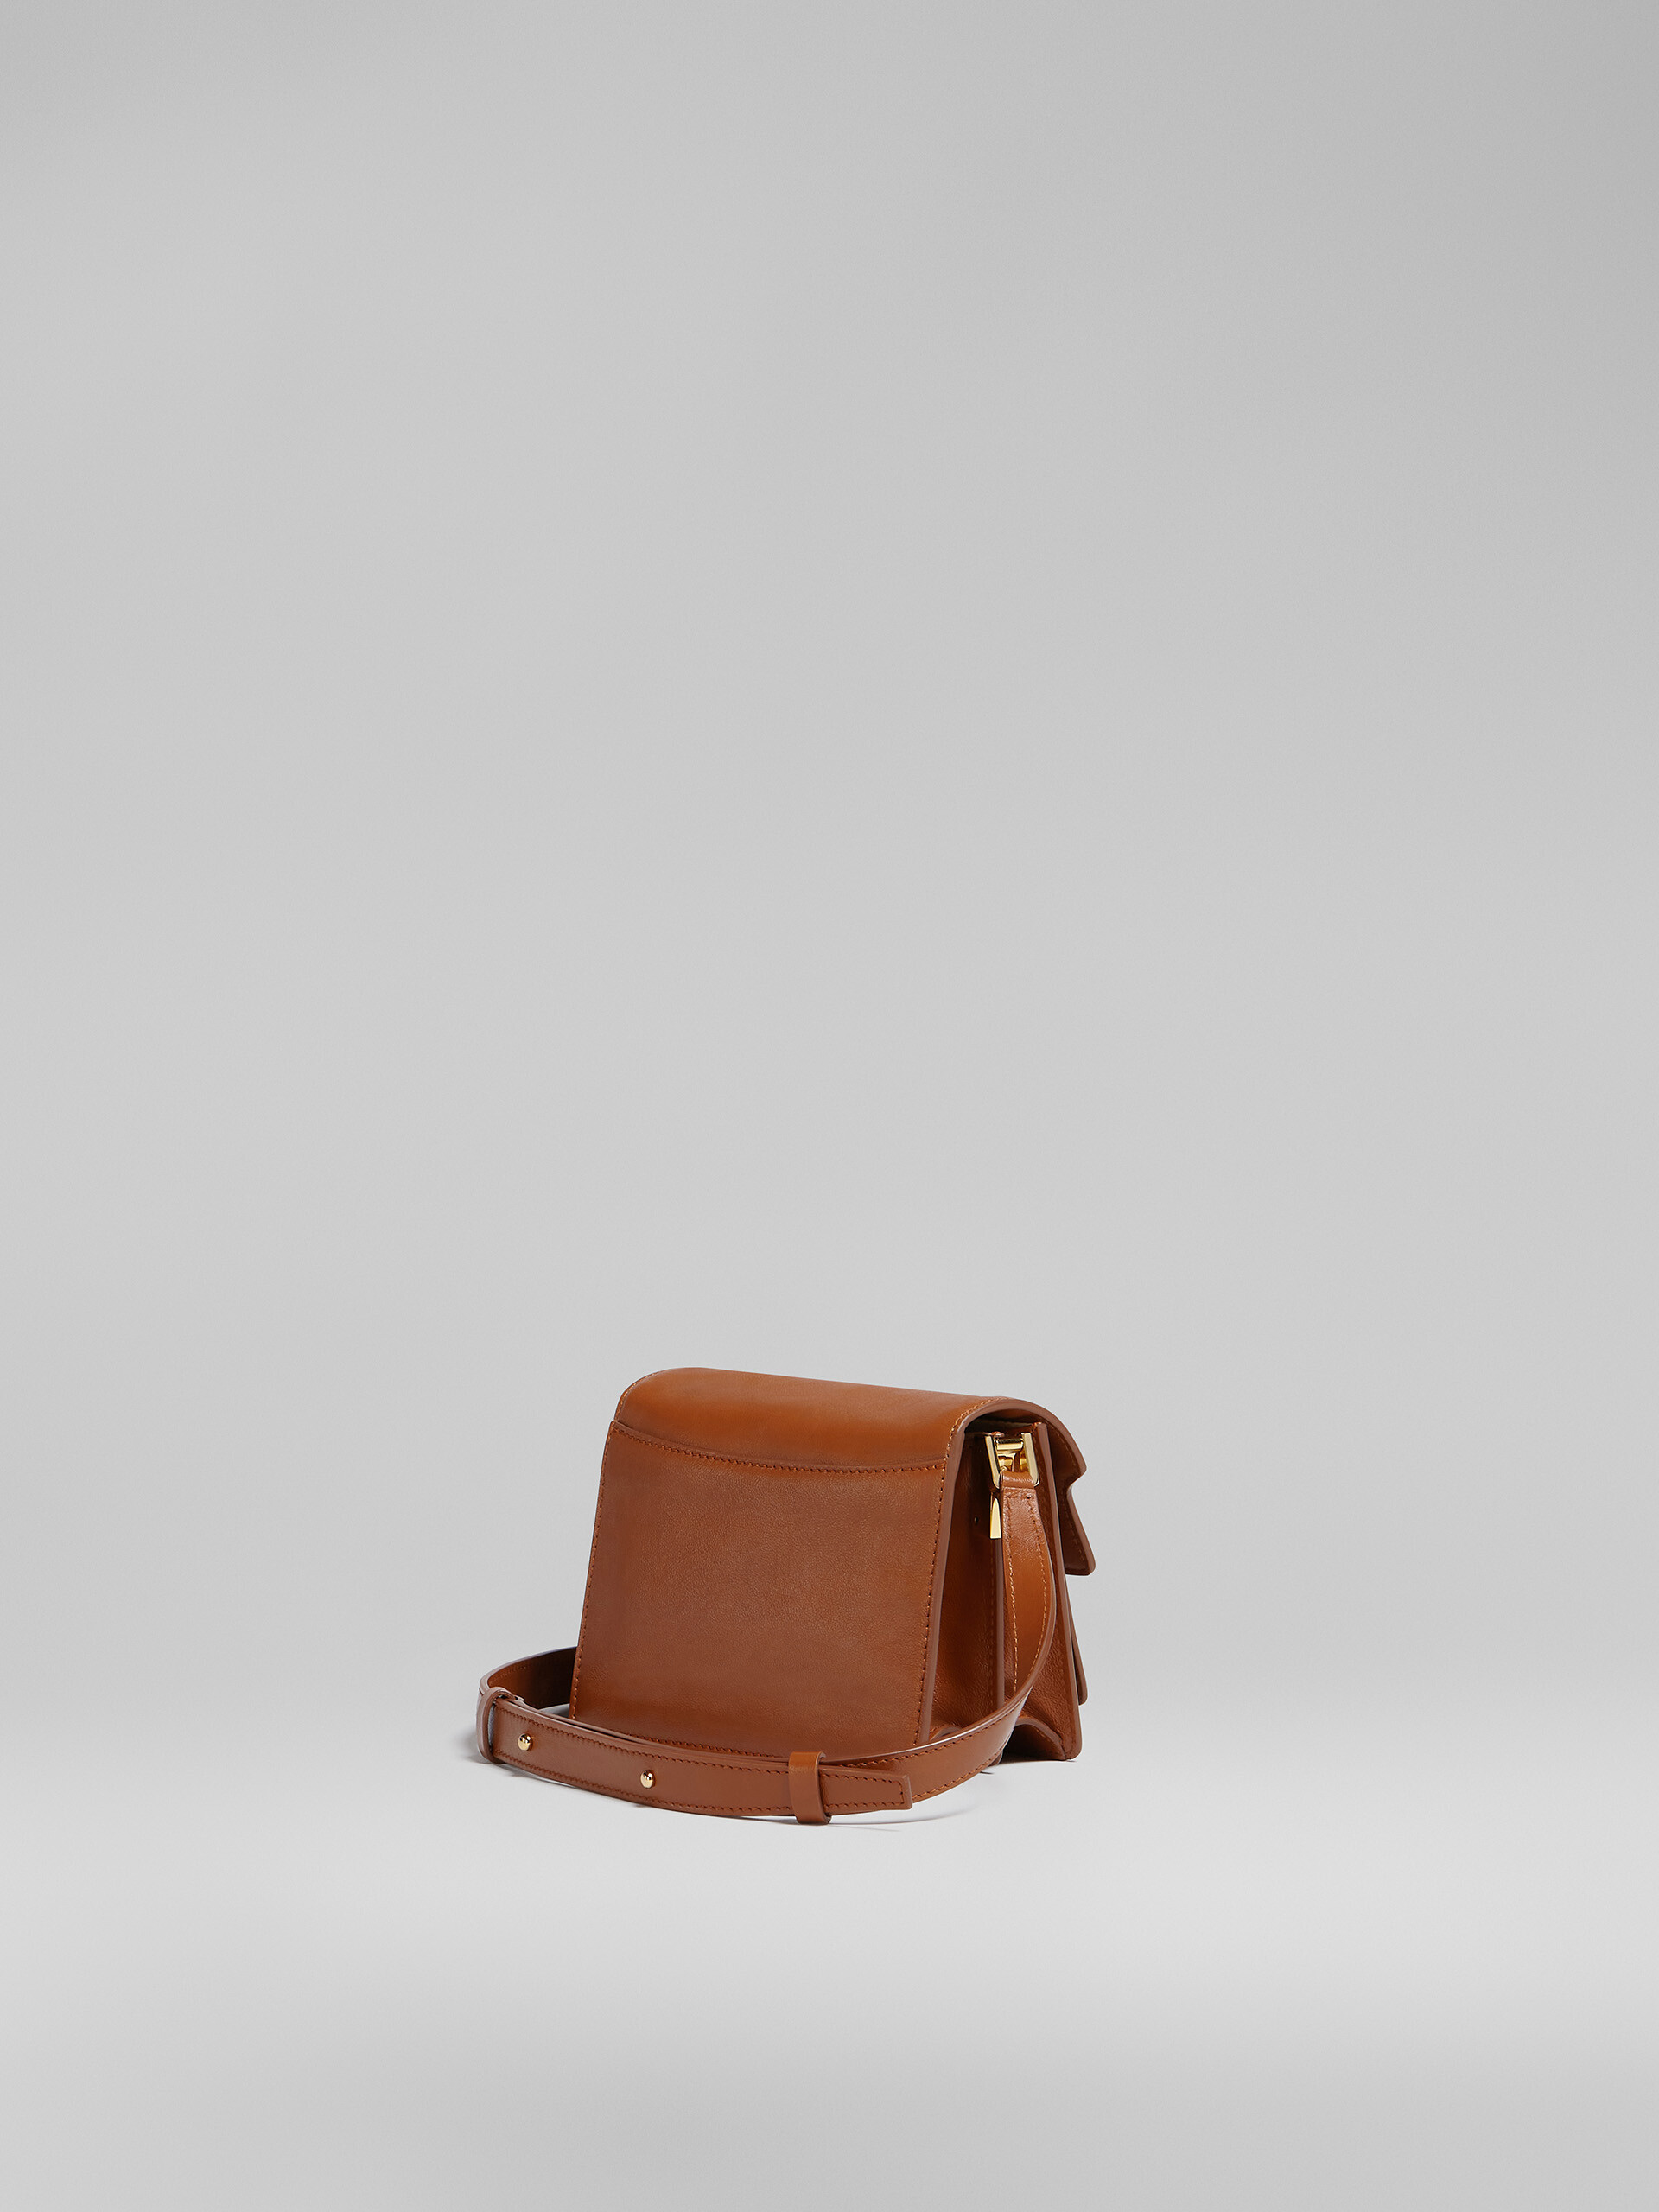 Mini-sac TRUNK SOFT en cuir rose - Sacs portés épaule - Image 3